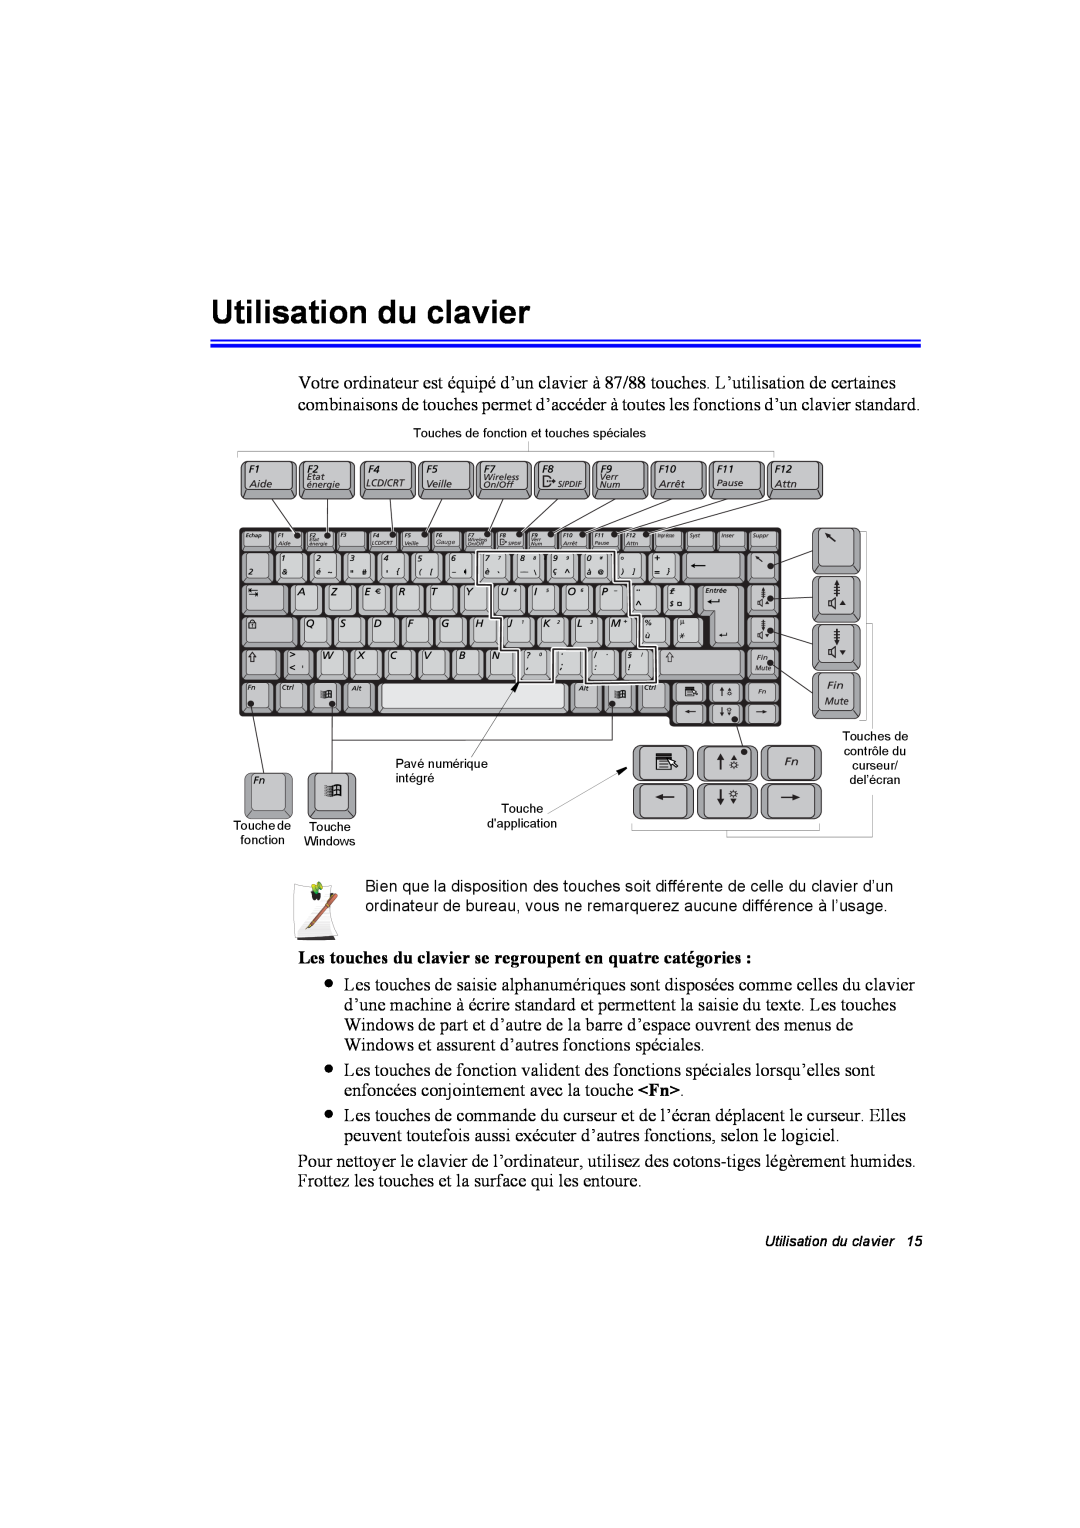 Samsung NP10FK00UG/SEF, NP10FP018N/SEF Utilisation du clavier, Les touches du clavier se regroupent en quatre catégories 